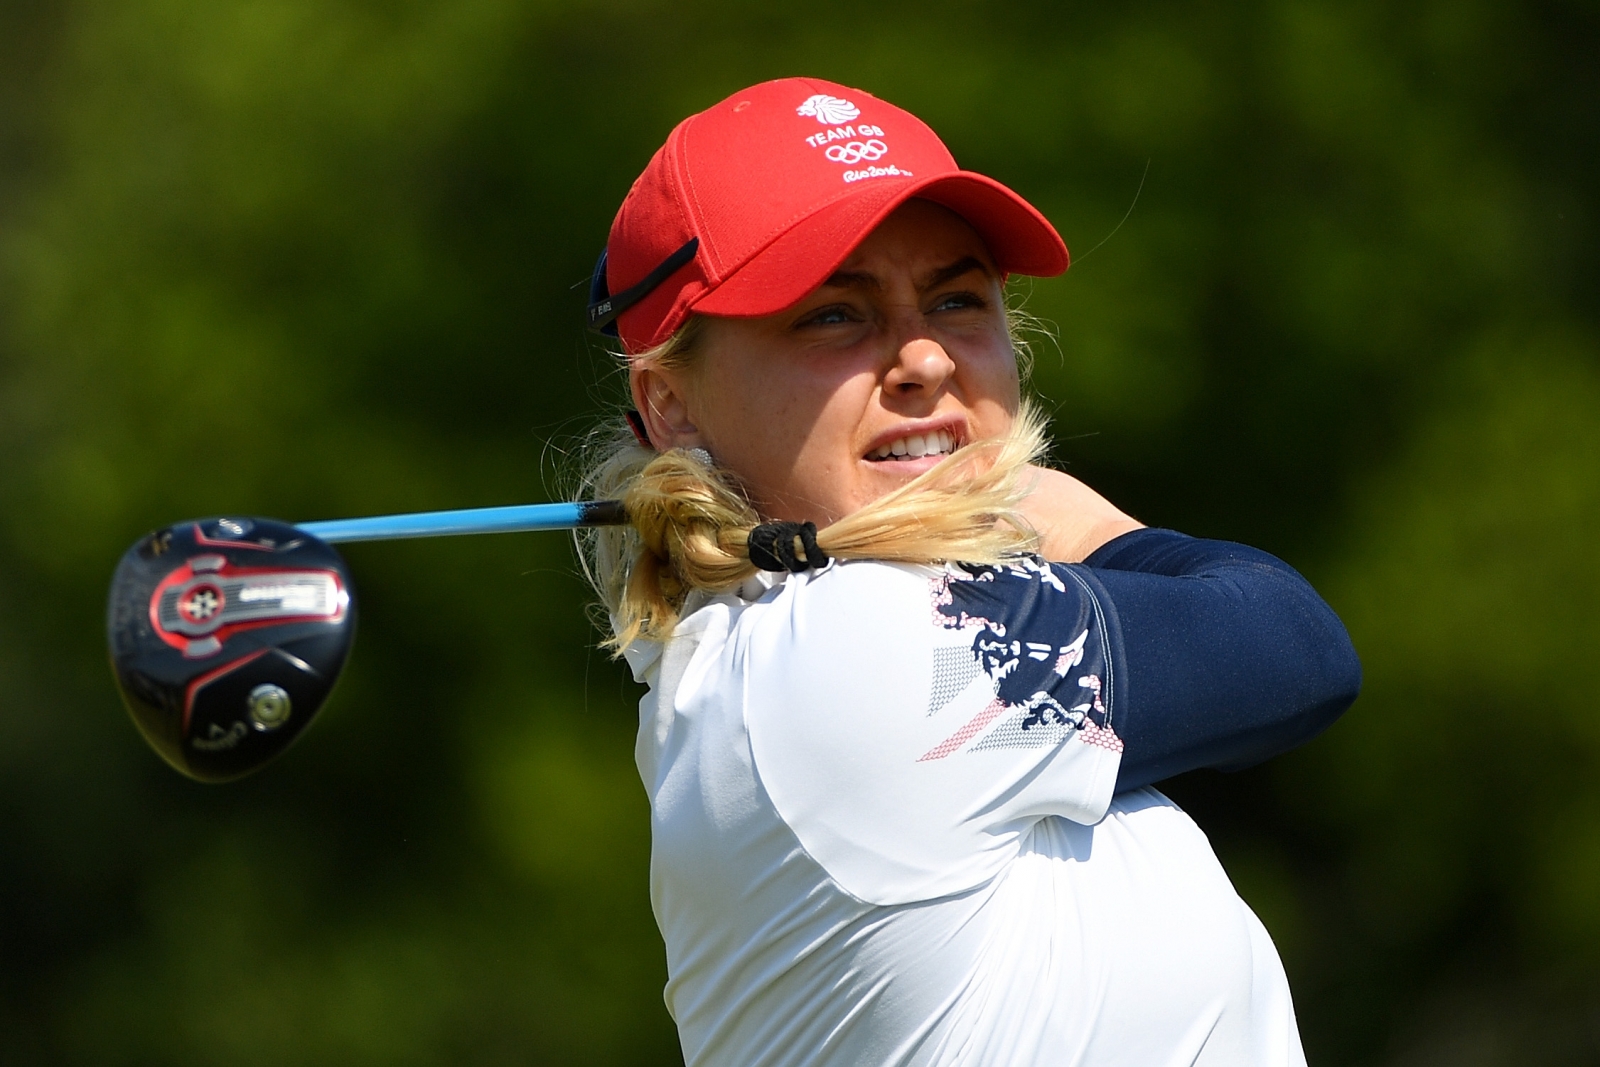 British golfer Charley Hull open to Muirfield hosting Women's British Open